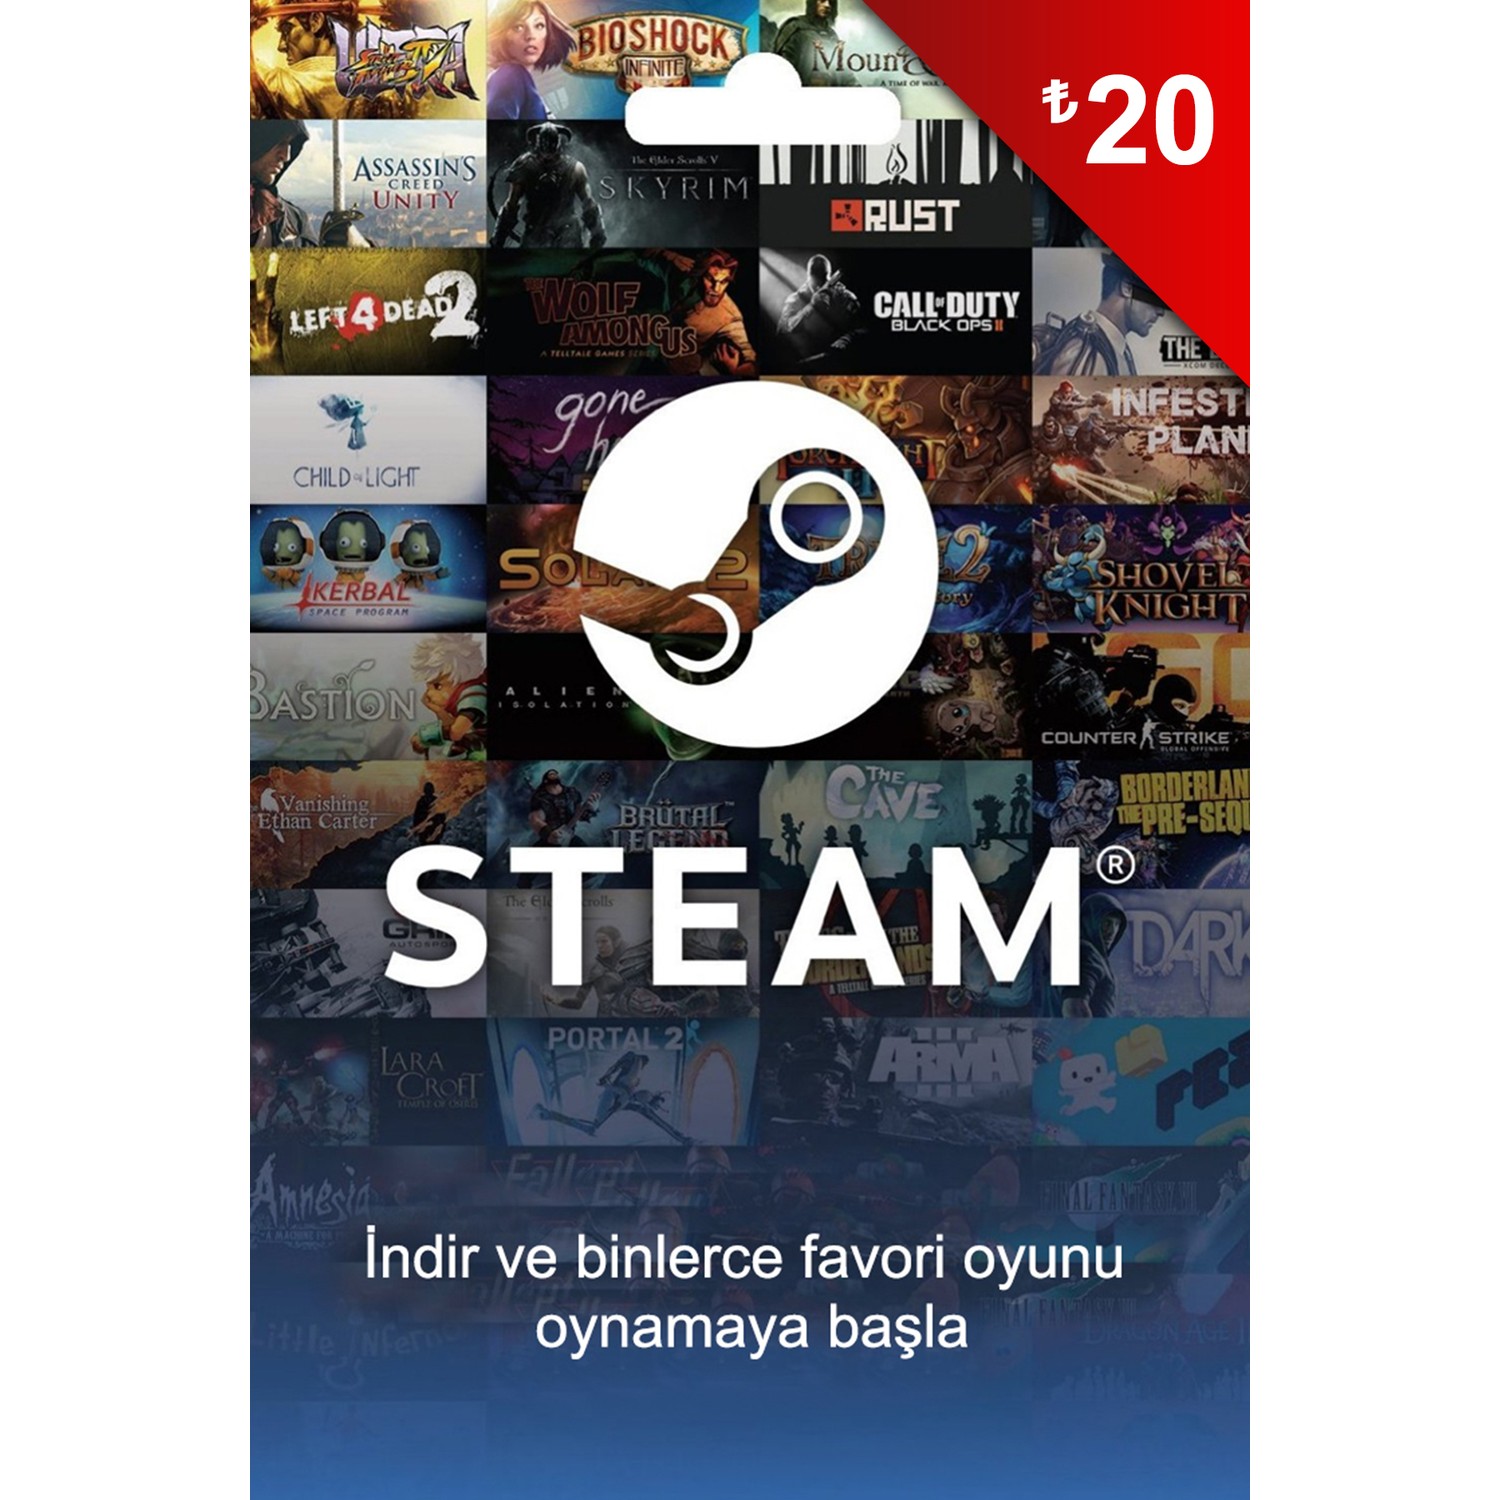 Турецкий стим игры. Карта Steam. Steam обложка. Стим Турция. Подарочная карта Steam.